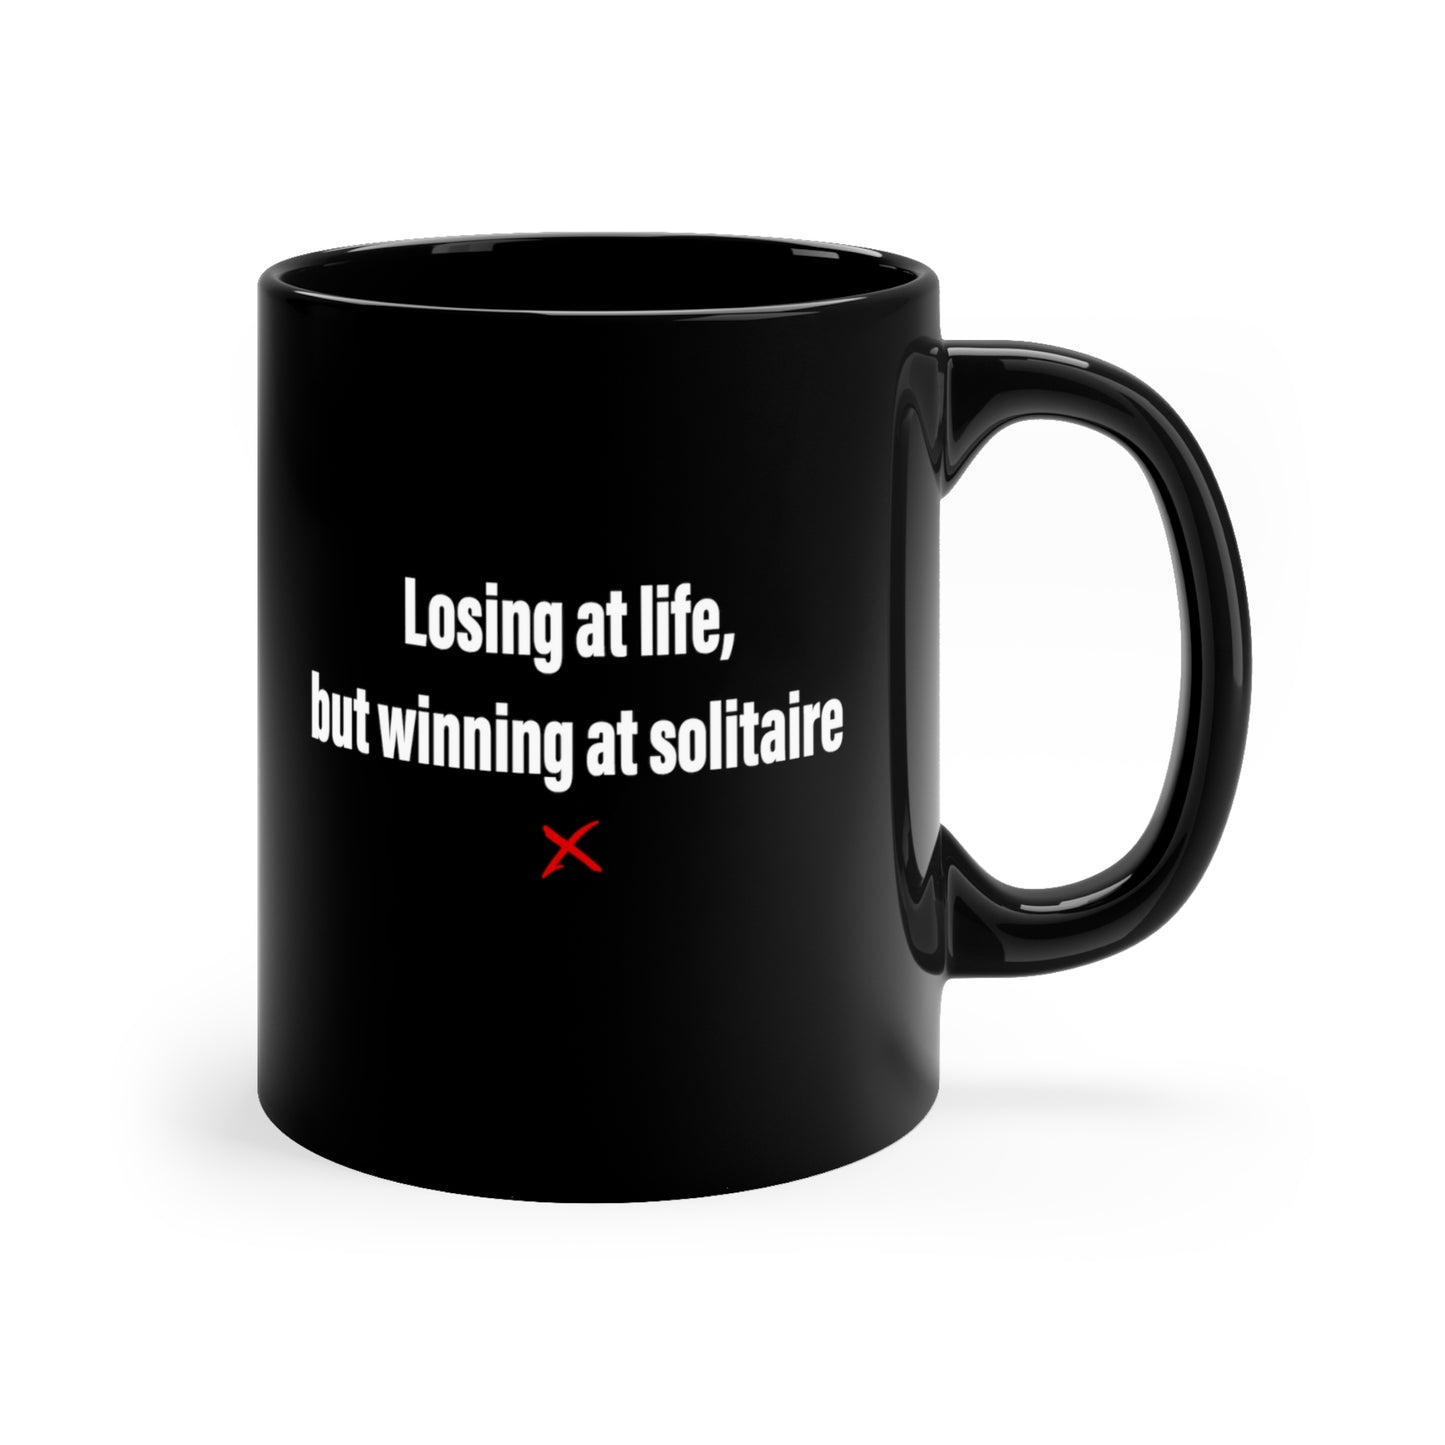 Losing at life, but winning at solitaire - Mug